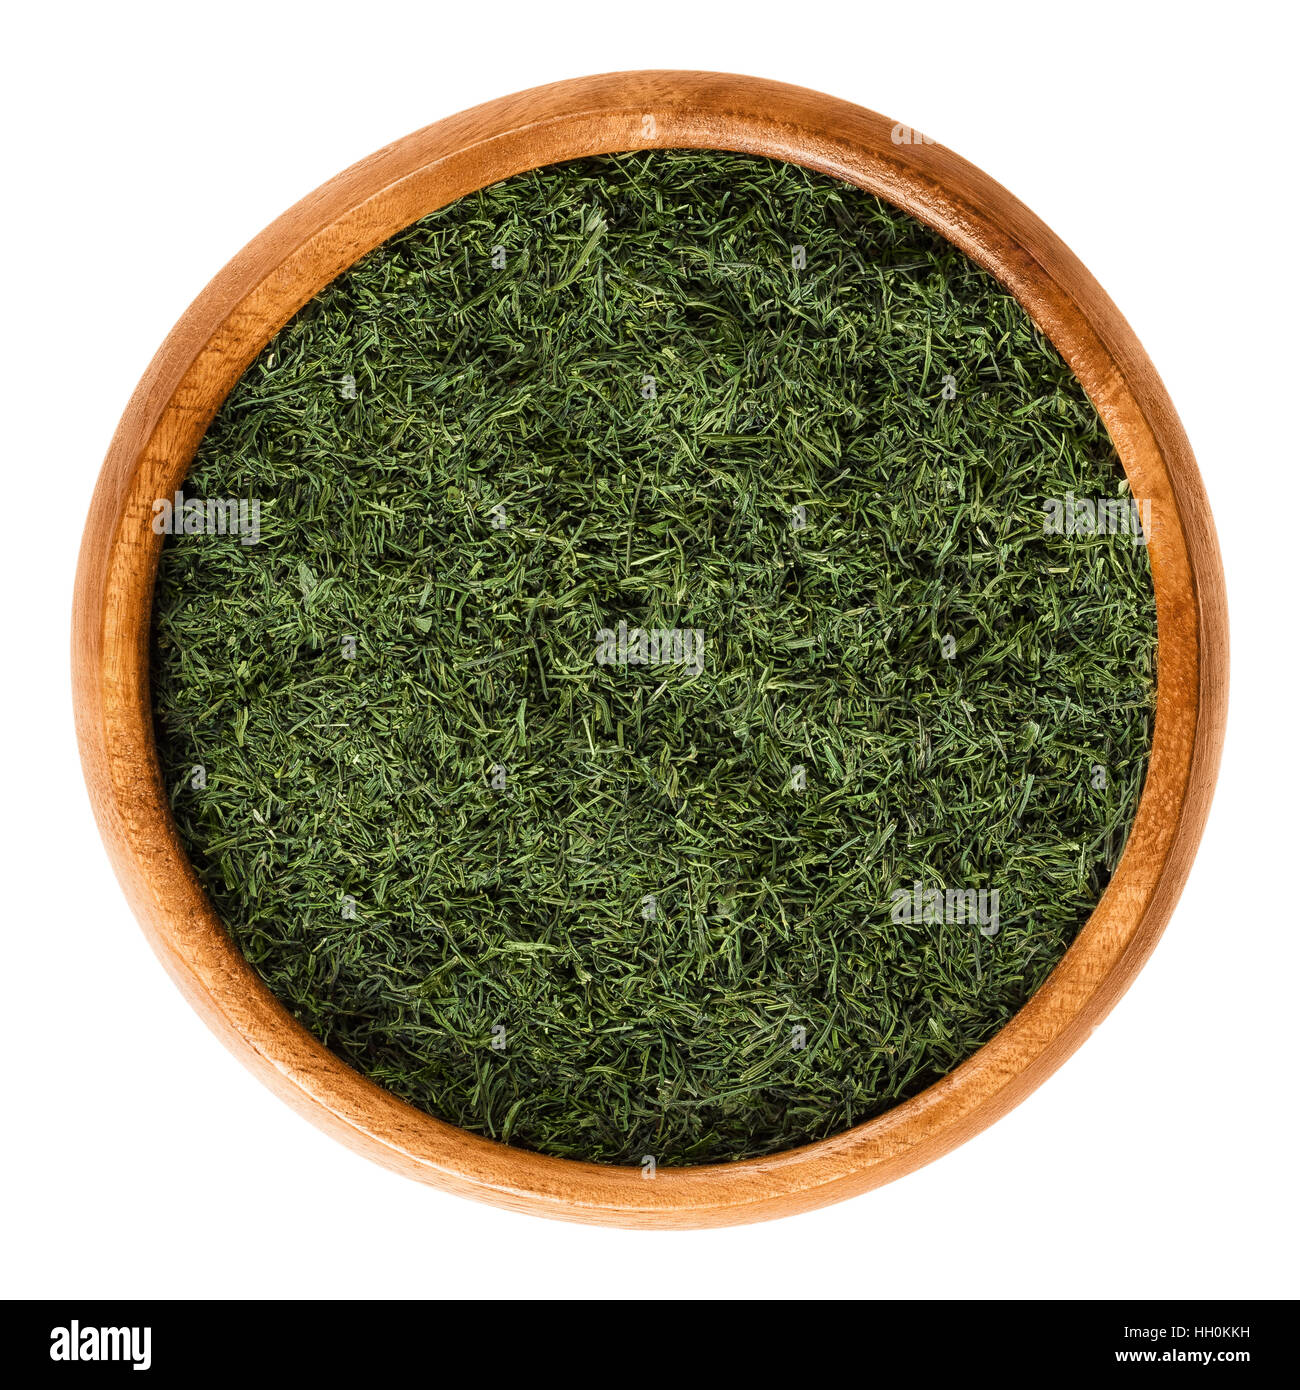 Eneldo frondas secas en el tazón de madera, también llamado eneldo hierba. Hojas verdes triturados de Anethum graveolens, utilizadas como hierbas y especias. Foto de stock